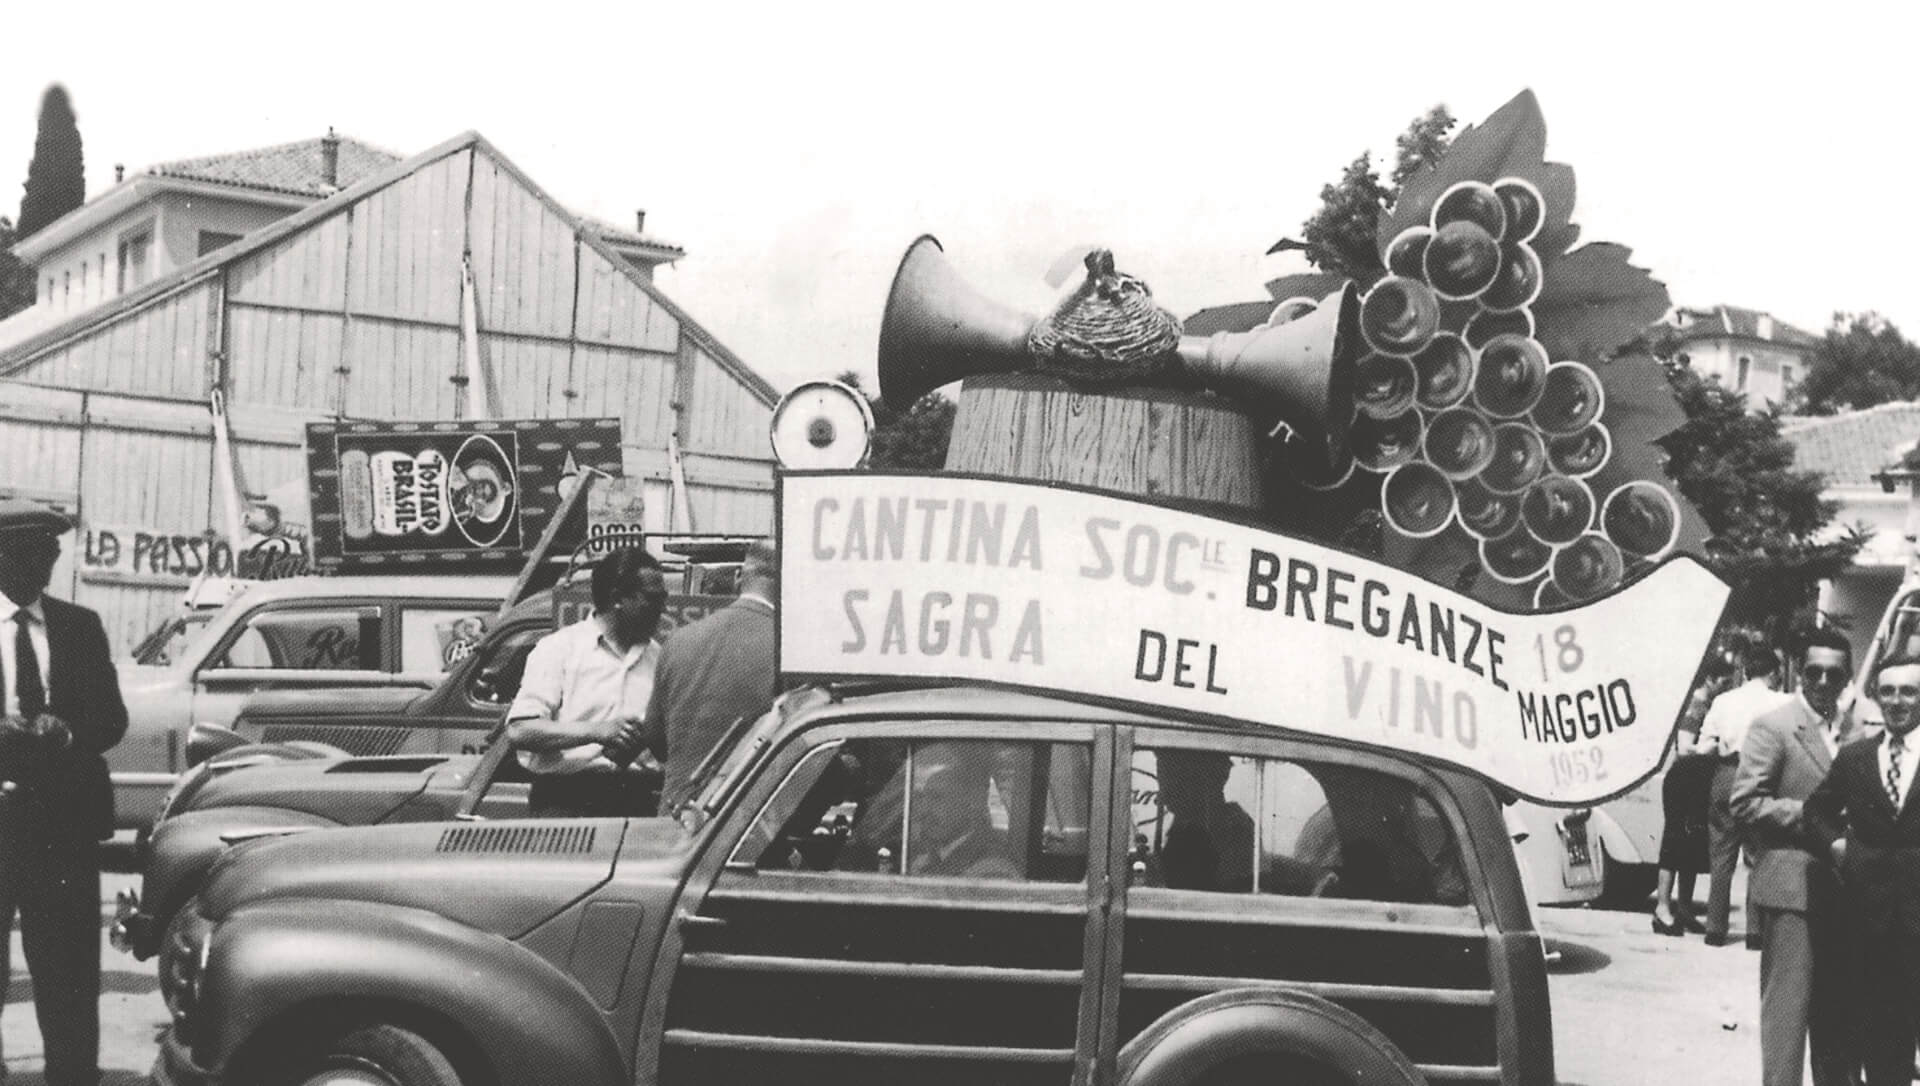 Cantina sociale, sagra del vino 1952